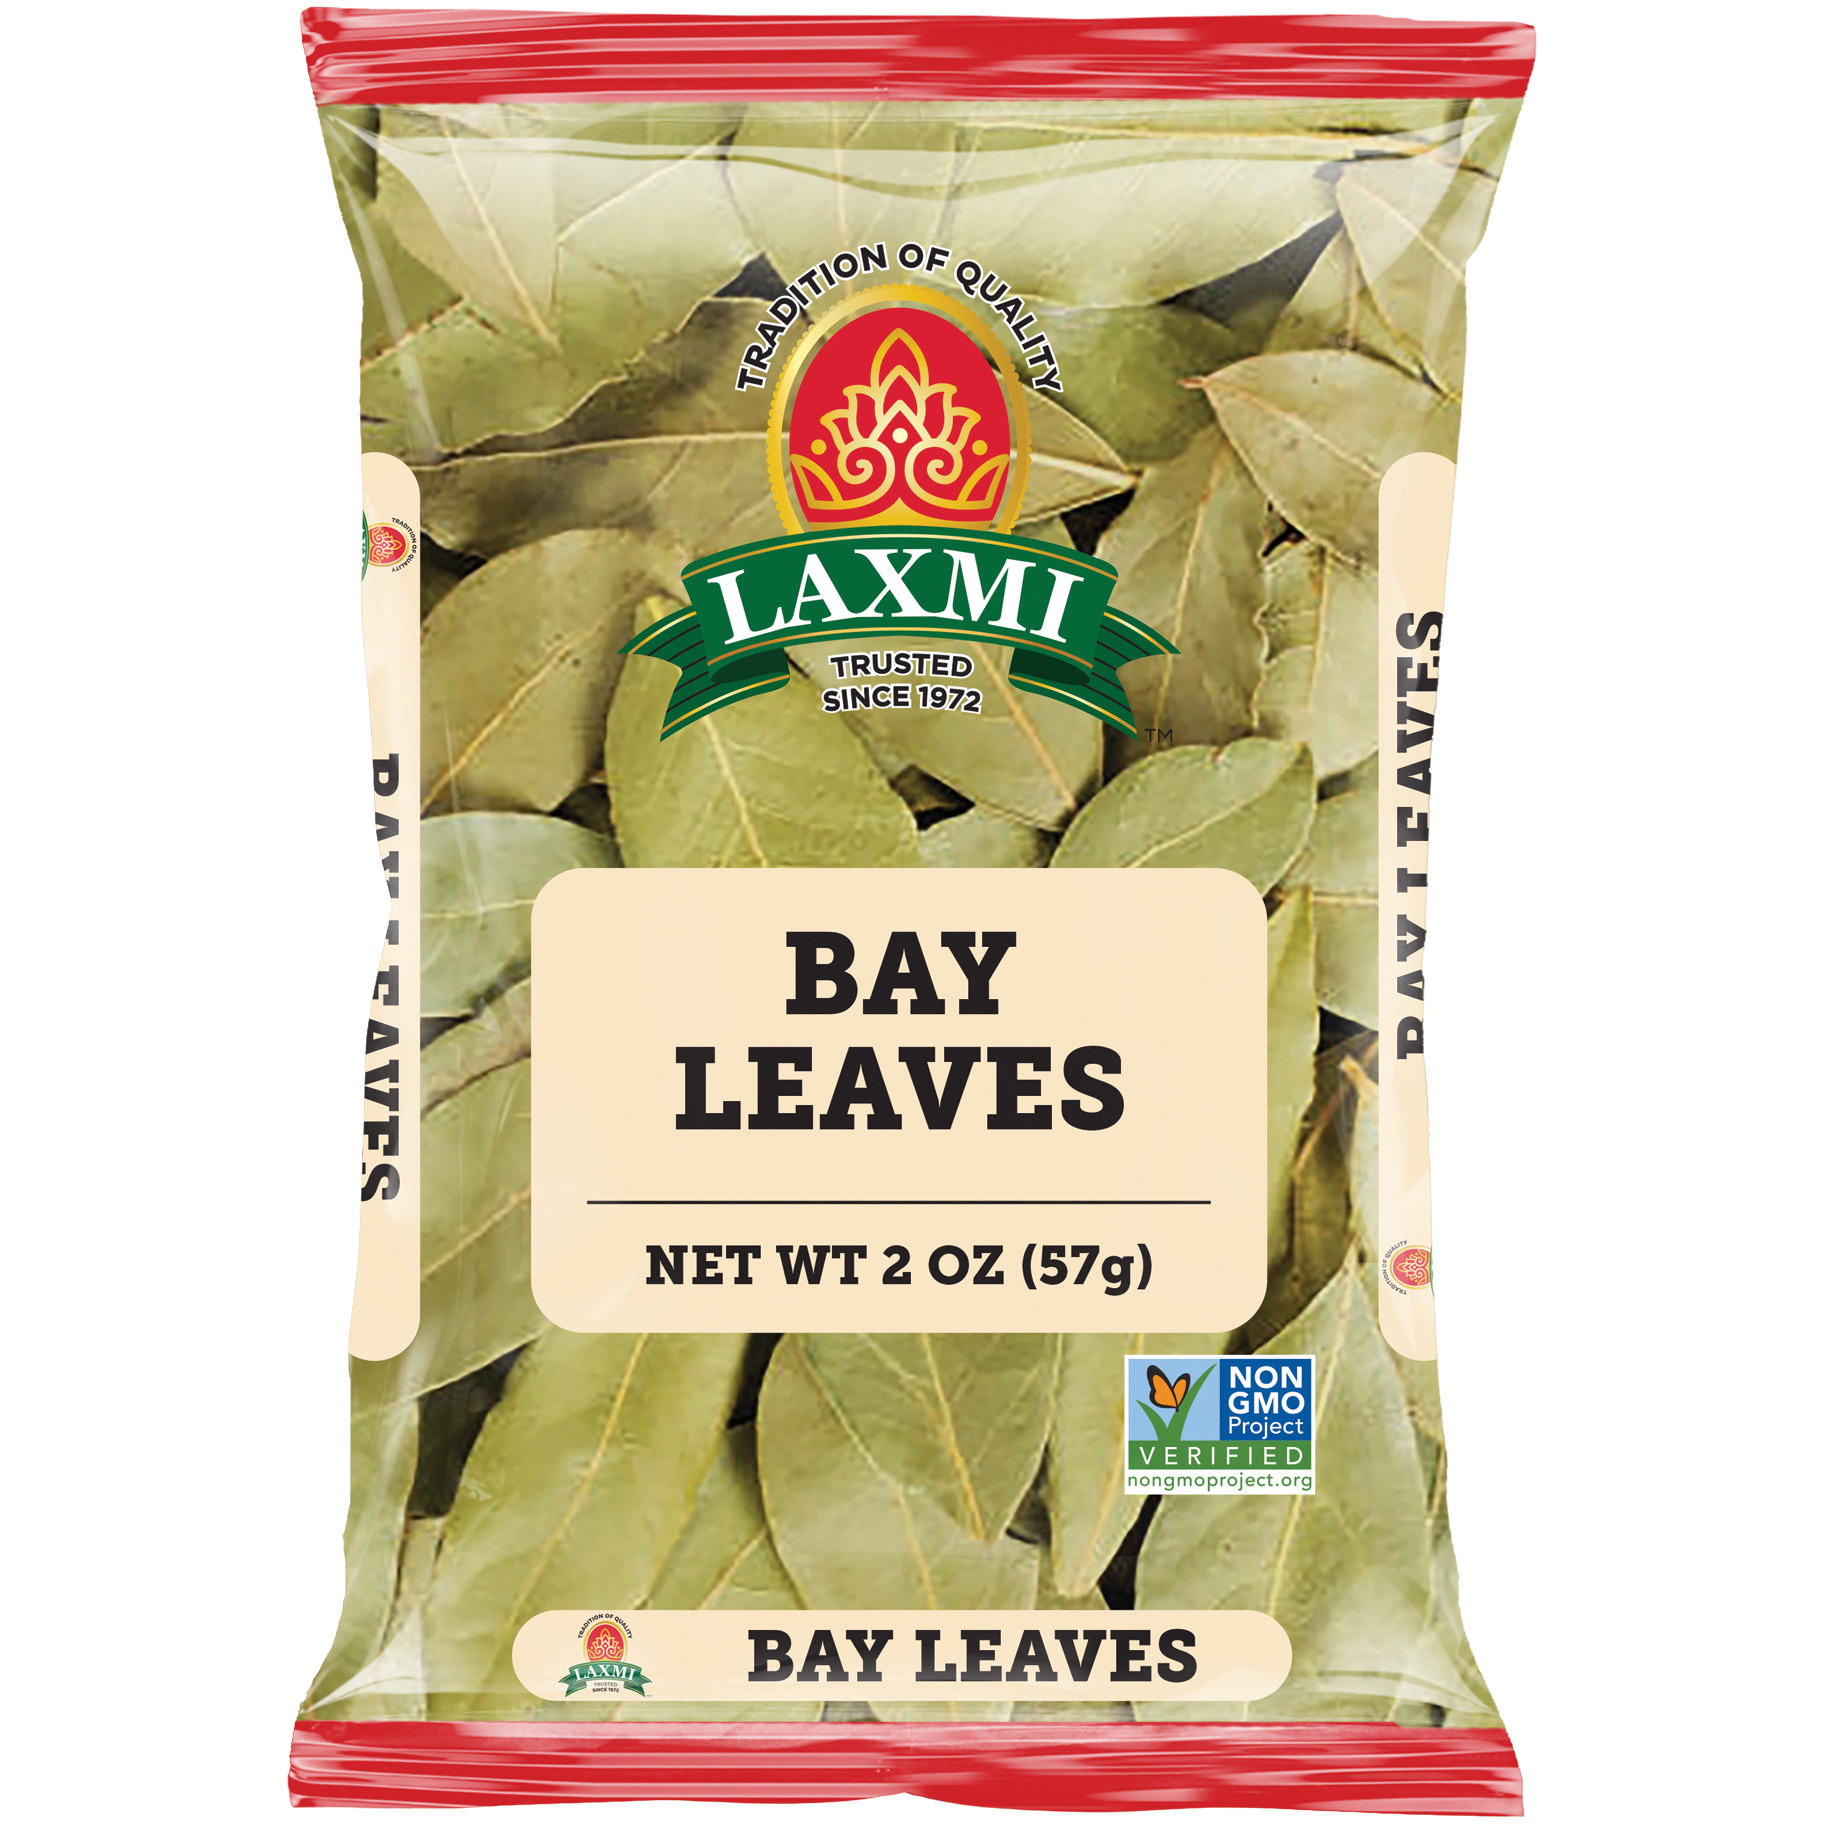 Laxmi Bay Leaves - 2 Oz (57 Gm)